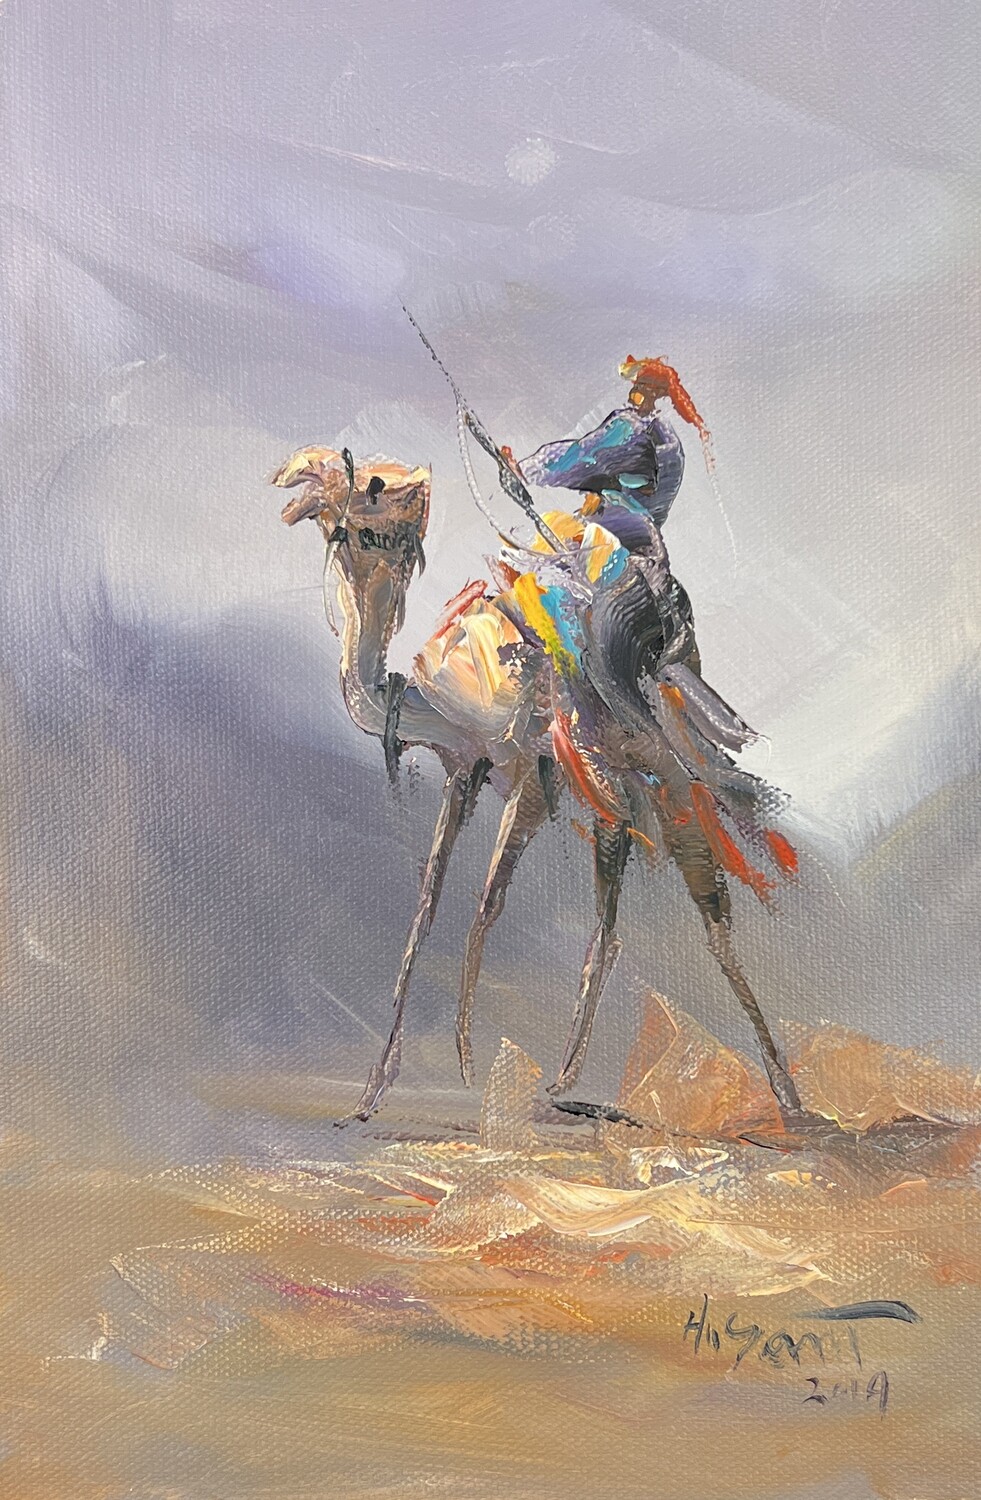 Desert Bedouin Rider - Knife Art Oil Painting